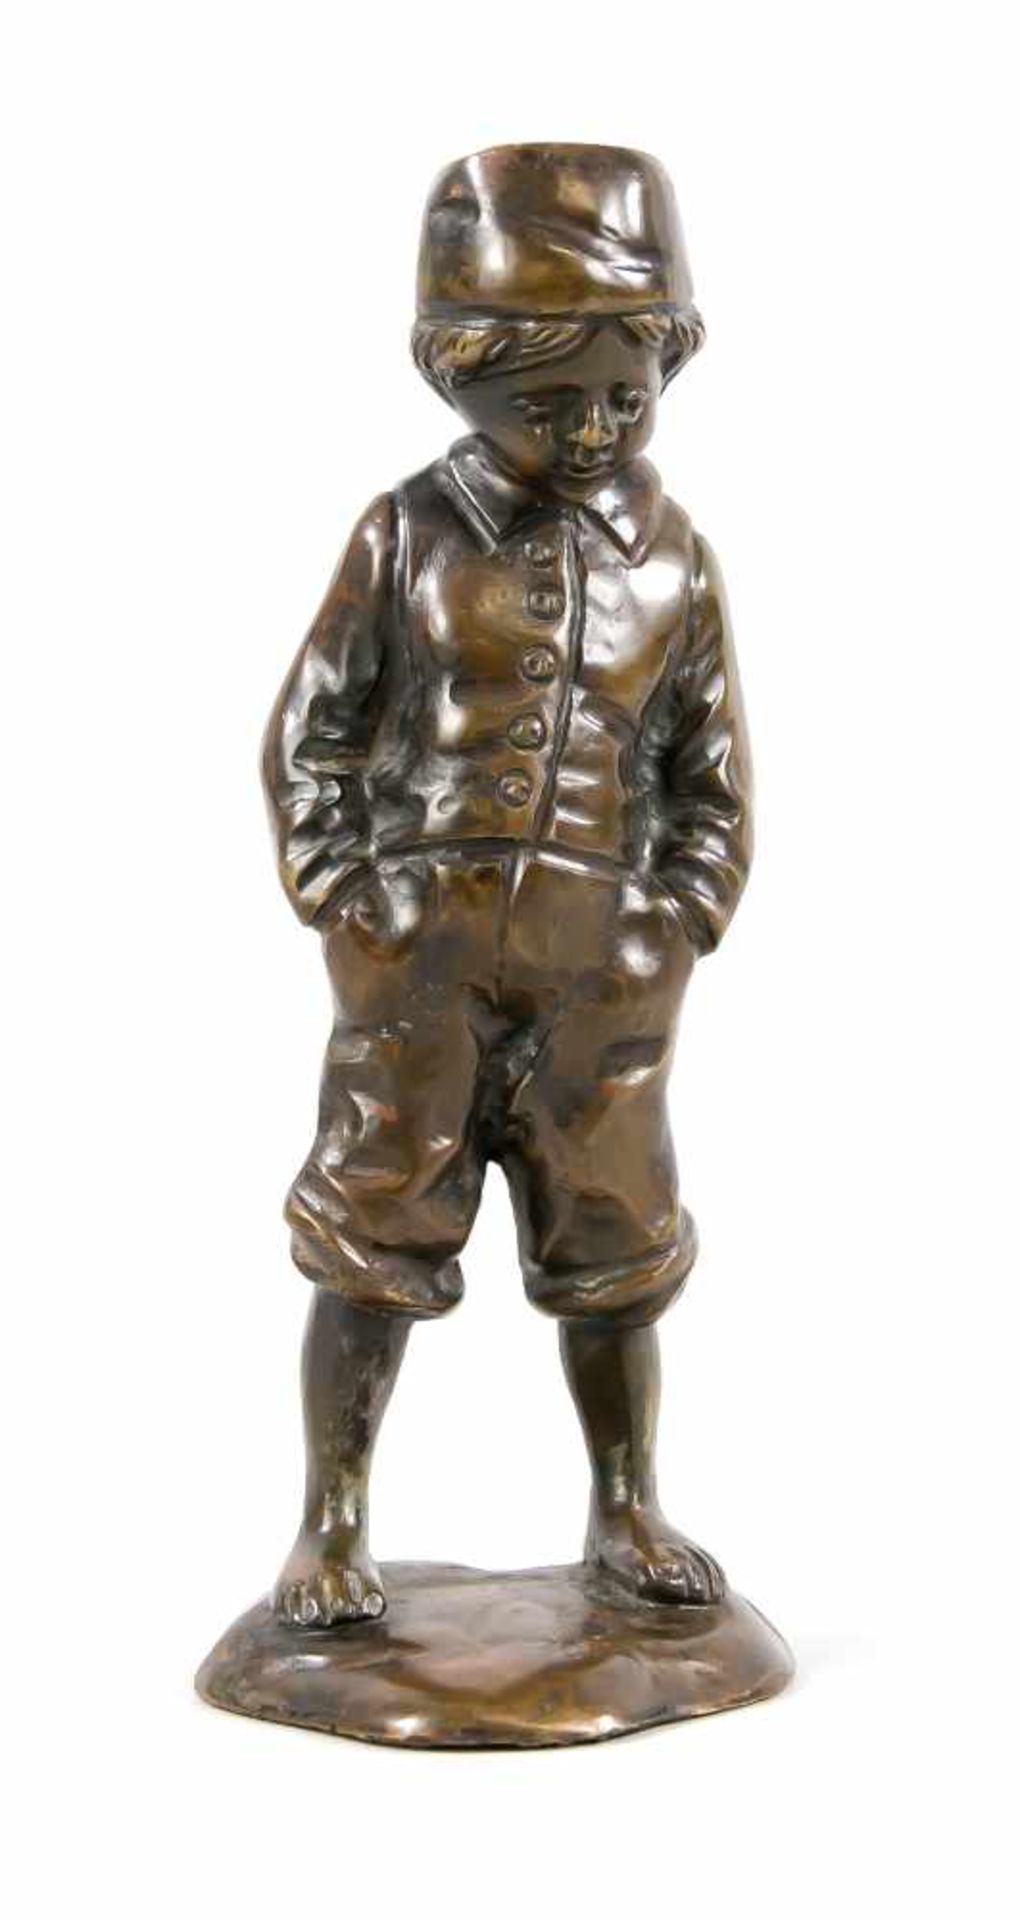 Unidentifizierter Bildhauer Ende 19. Jh., Junge mit den Händen in den Hosentaschen, braun